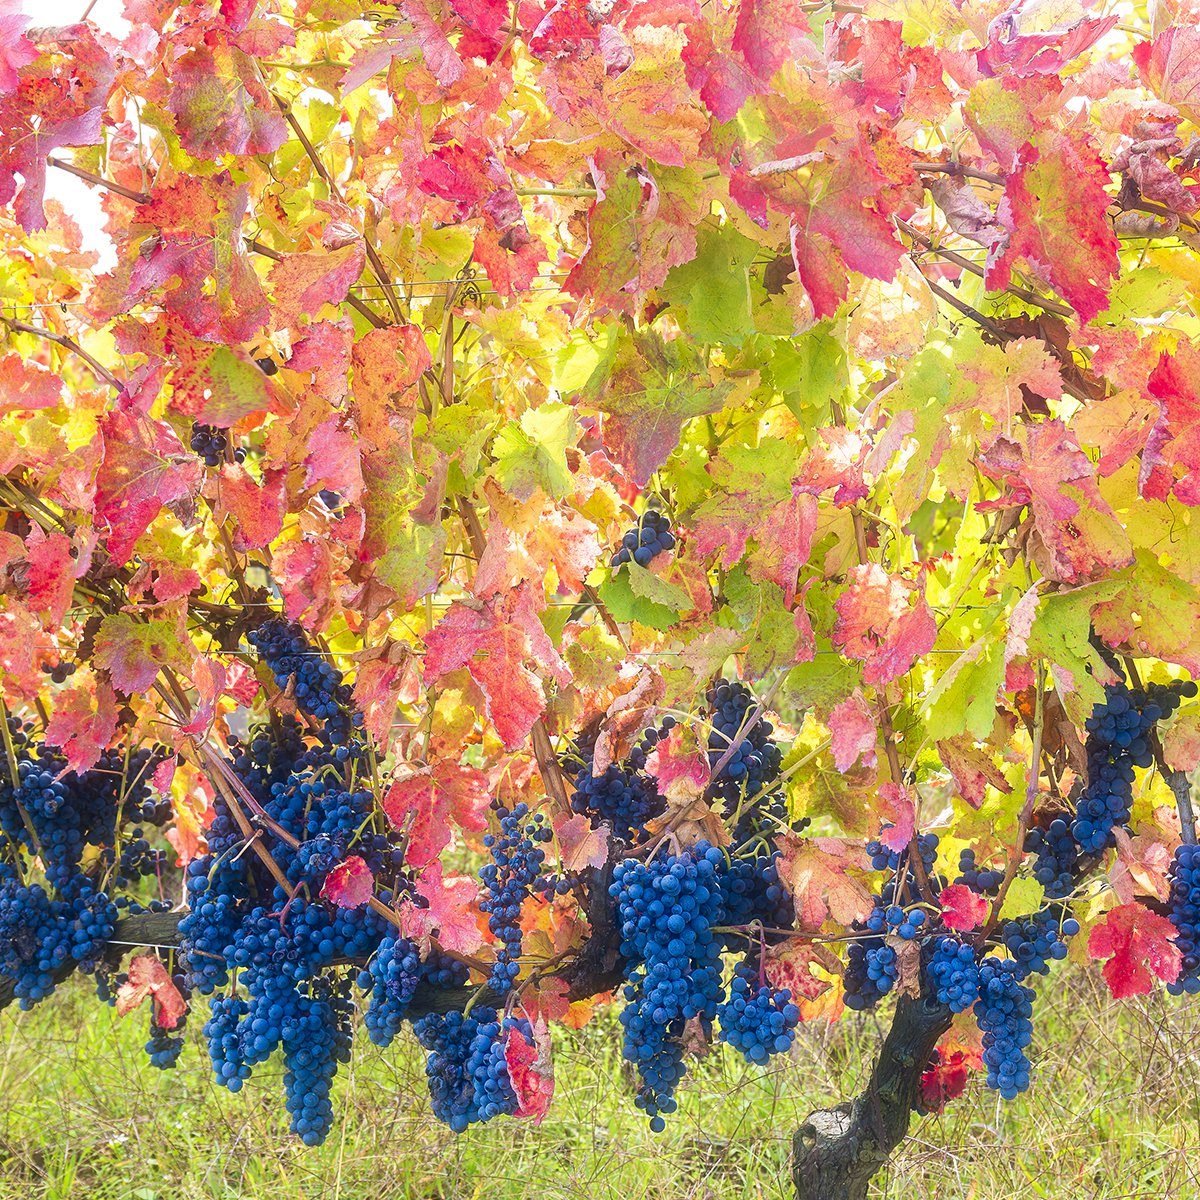 Aglianico del Vulture grapes mature late autumn giving warm fantastic colors